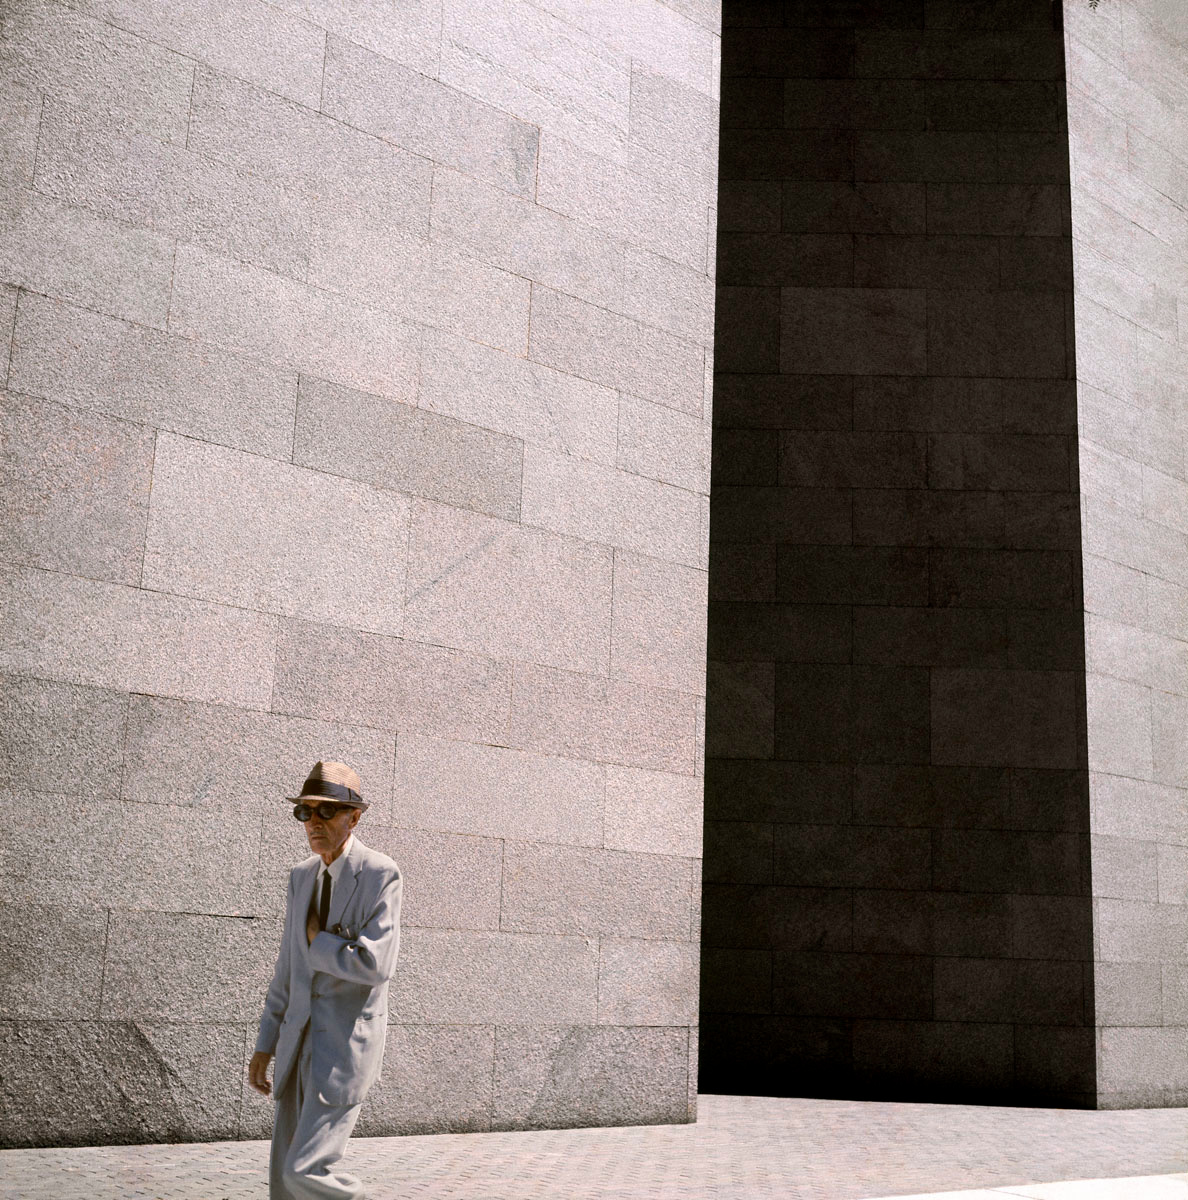 La photographie montre un homme chapeauté marchant devant un immeuble.